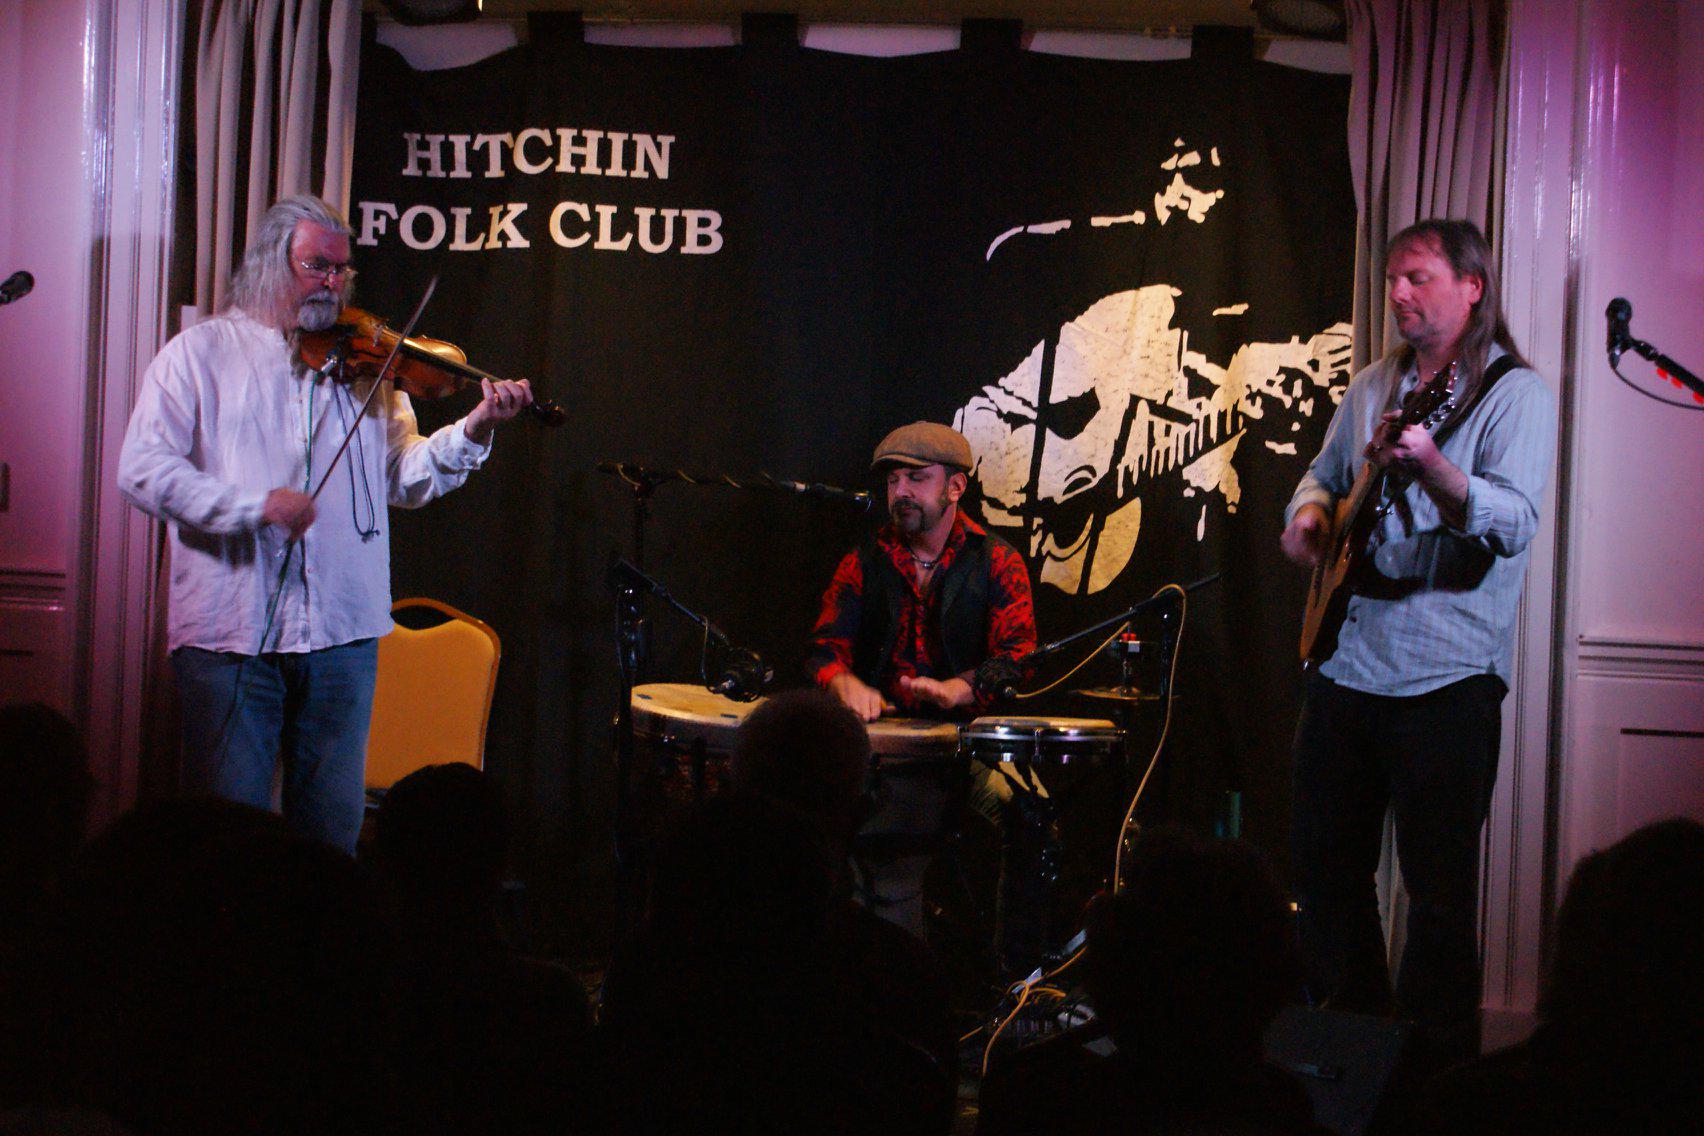 Hitchin Folk Club